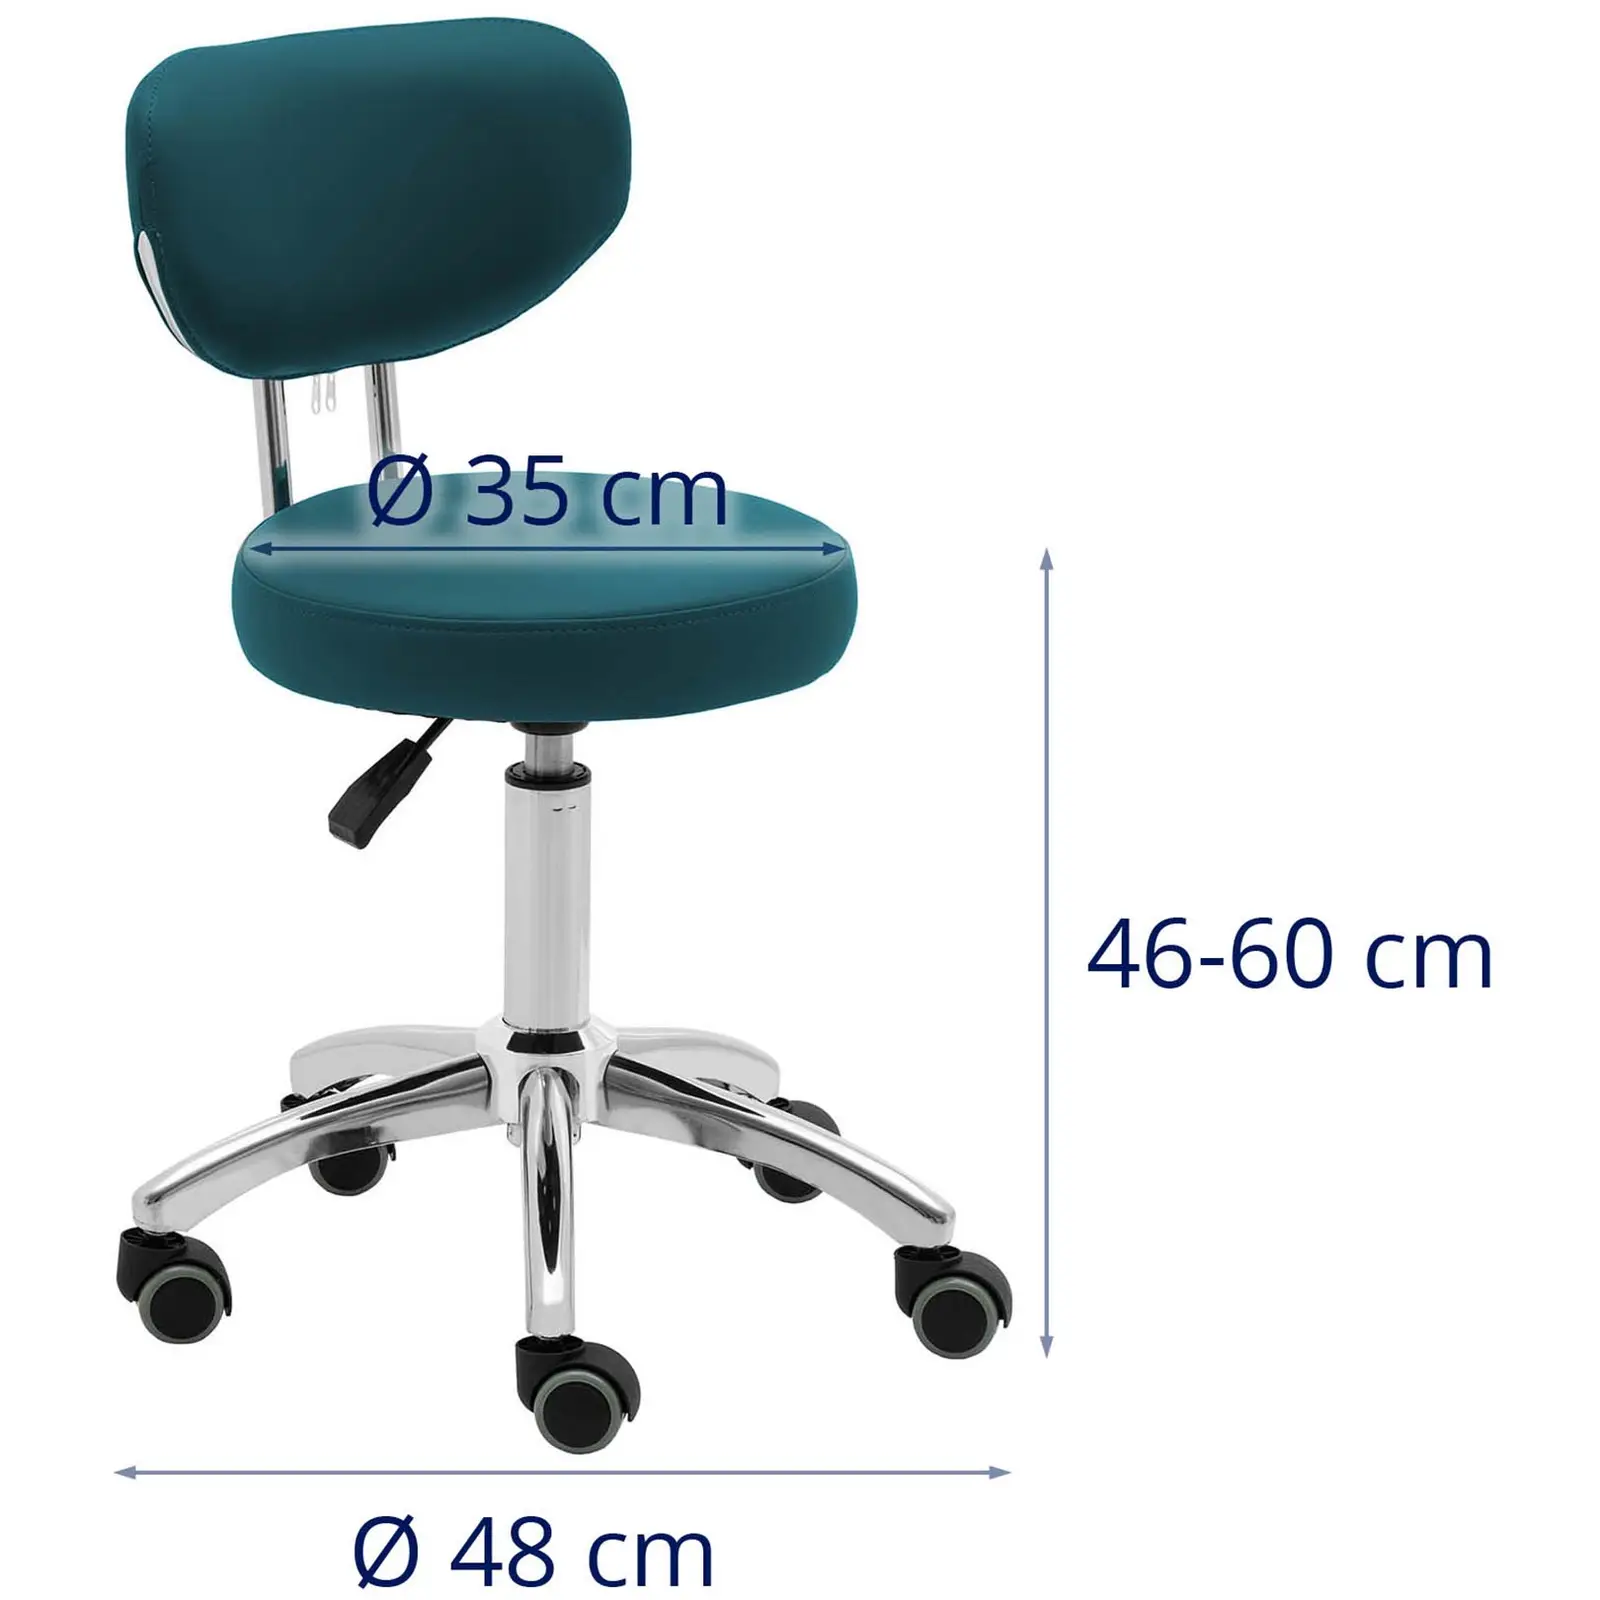 Cadeira para salão de beleza - 46 - 60 cm - 150 kg - turquesa